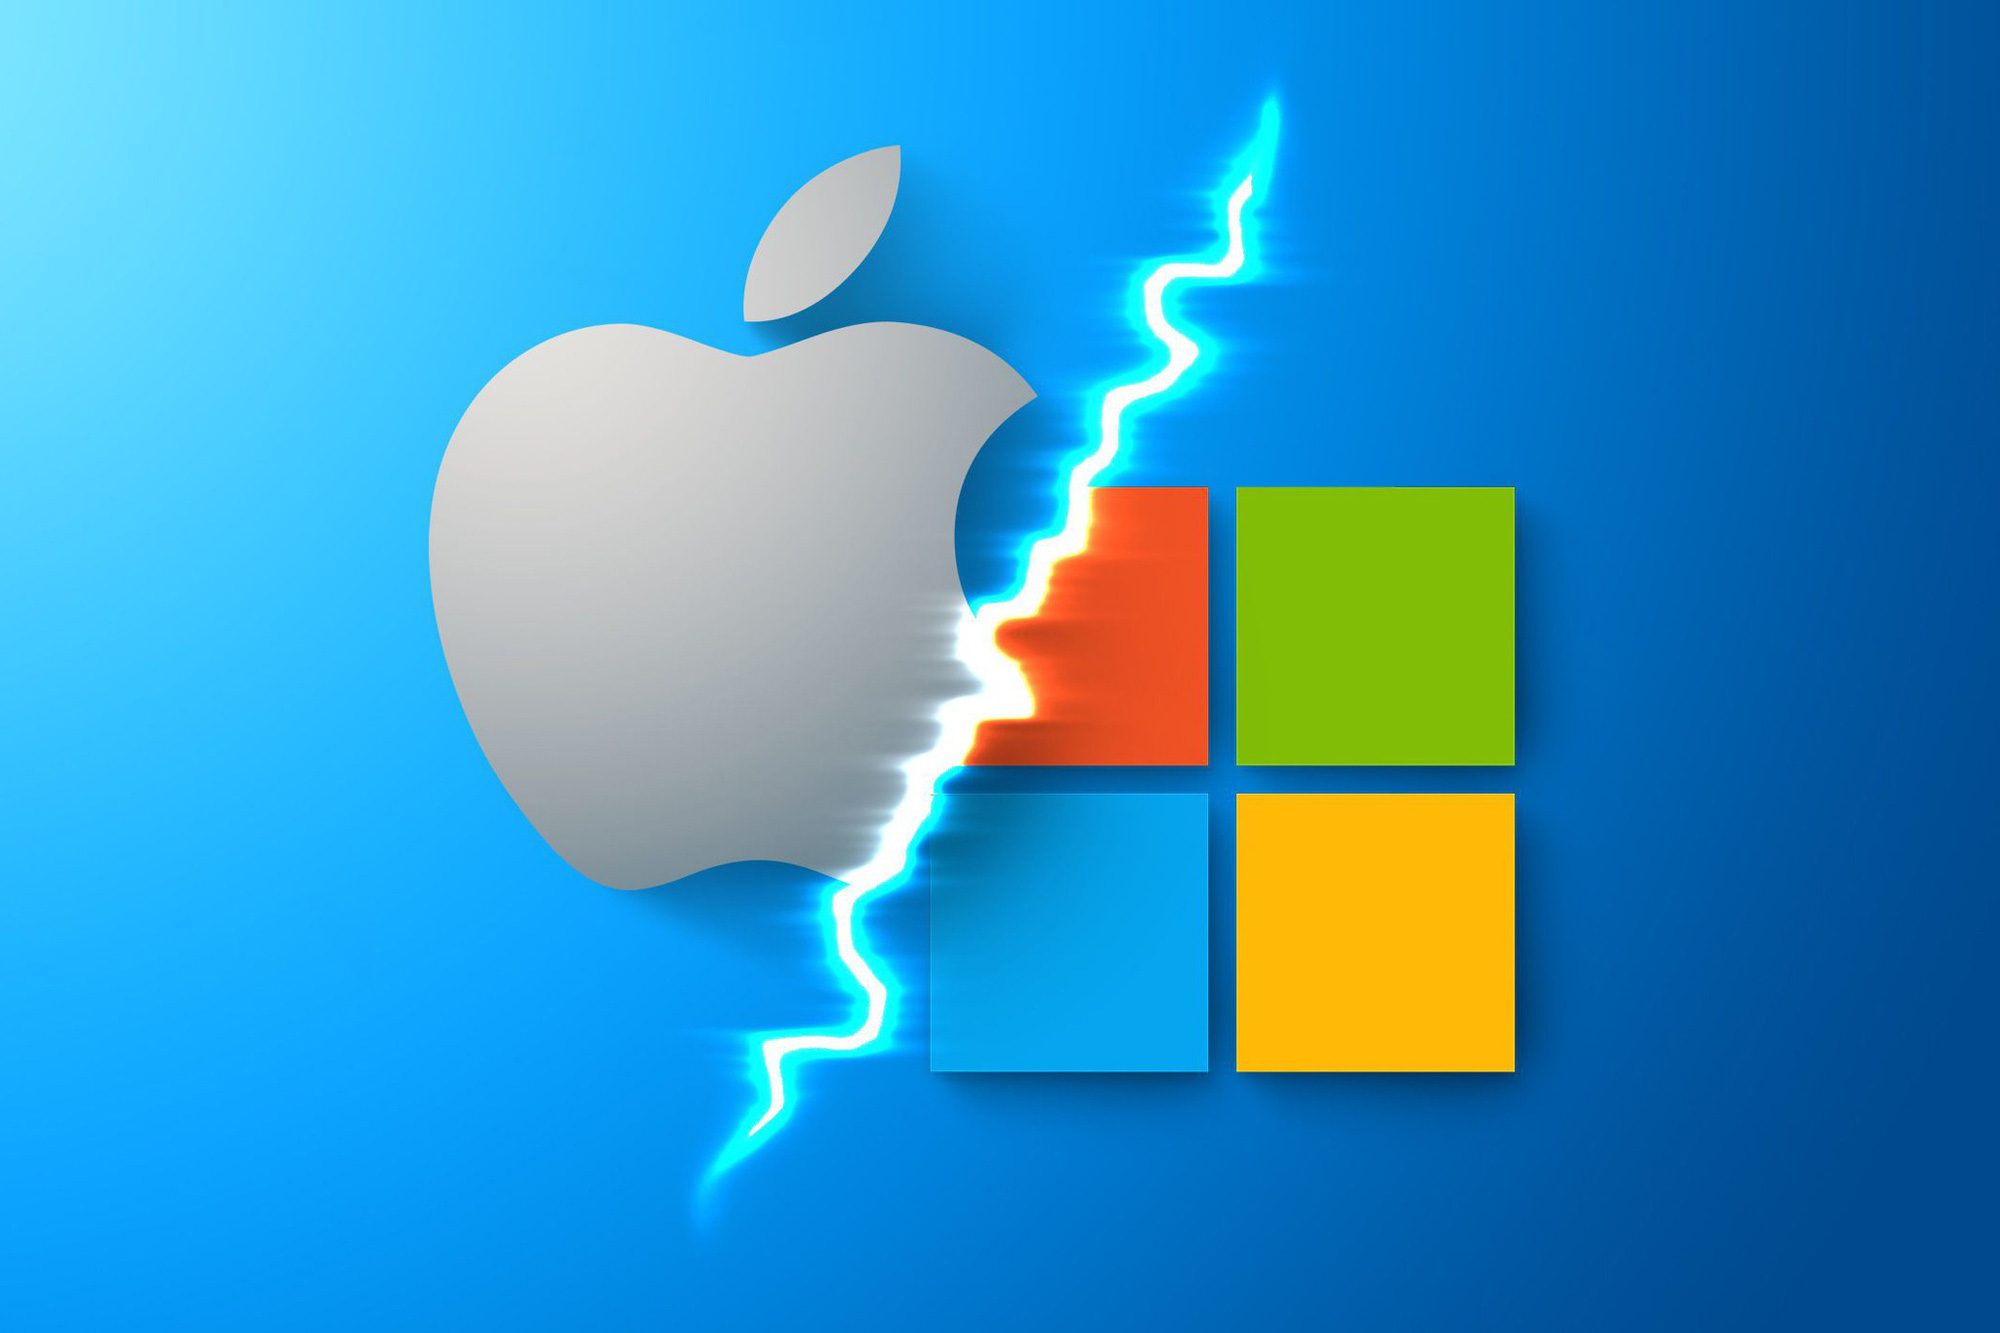 Windows 11, khởi đầu cho cuộc chiến trong kỷ nguyên mới giữa Apple - Microsoft - Ảnh 1.